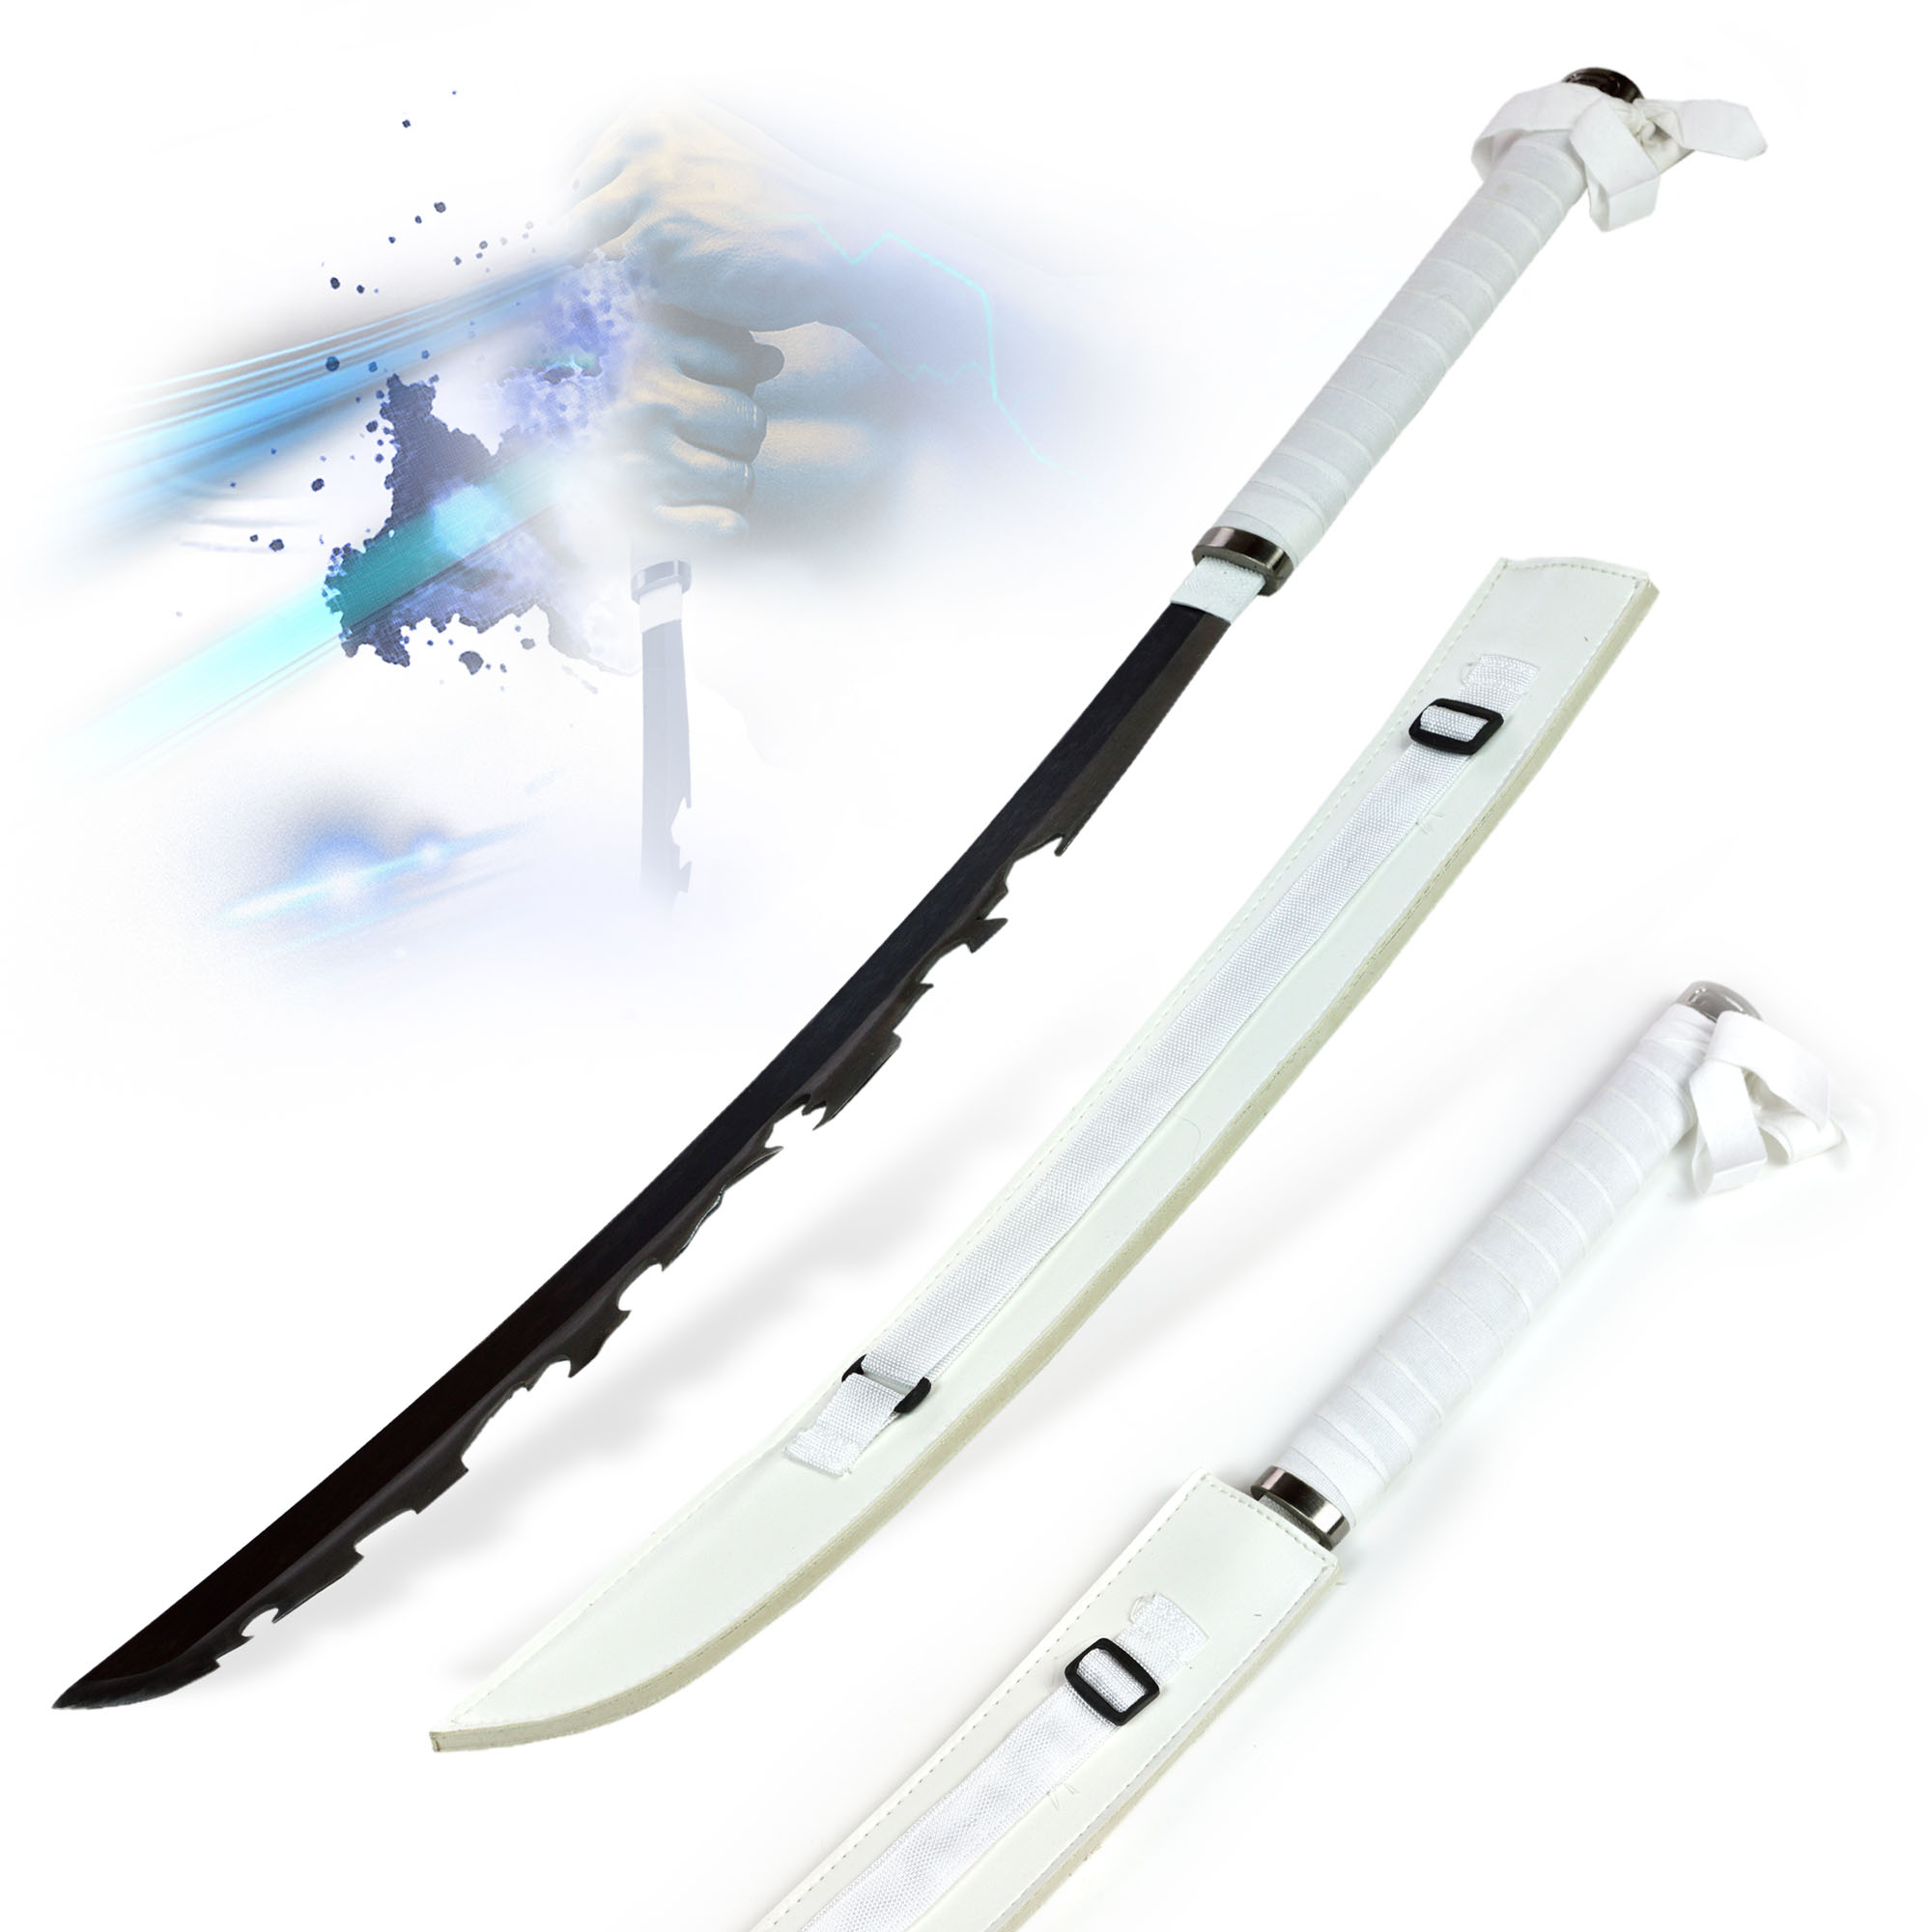 Demon Slayer: Kimetsu no Yaiba - Hashibira Inosuke's Sword with Sheath